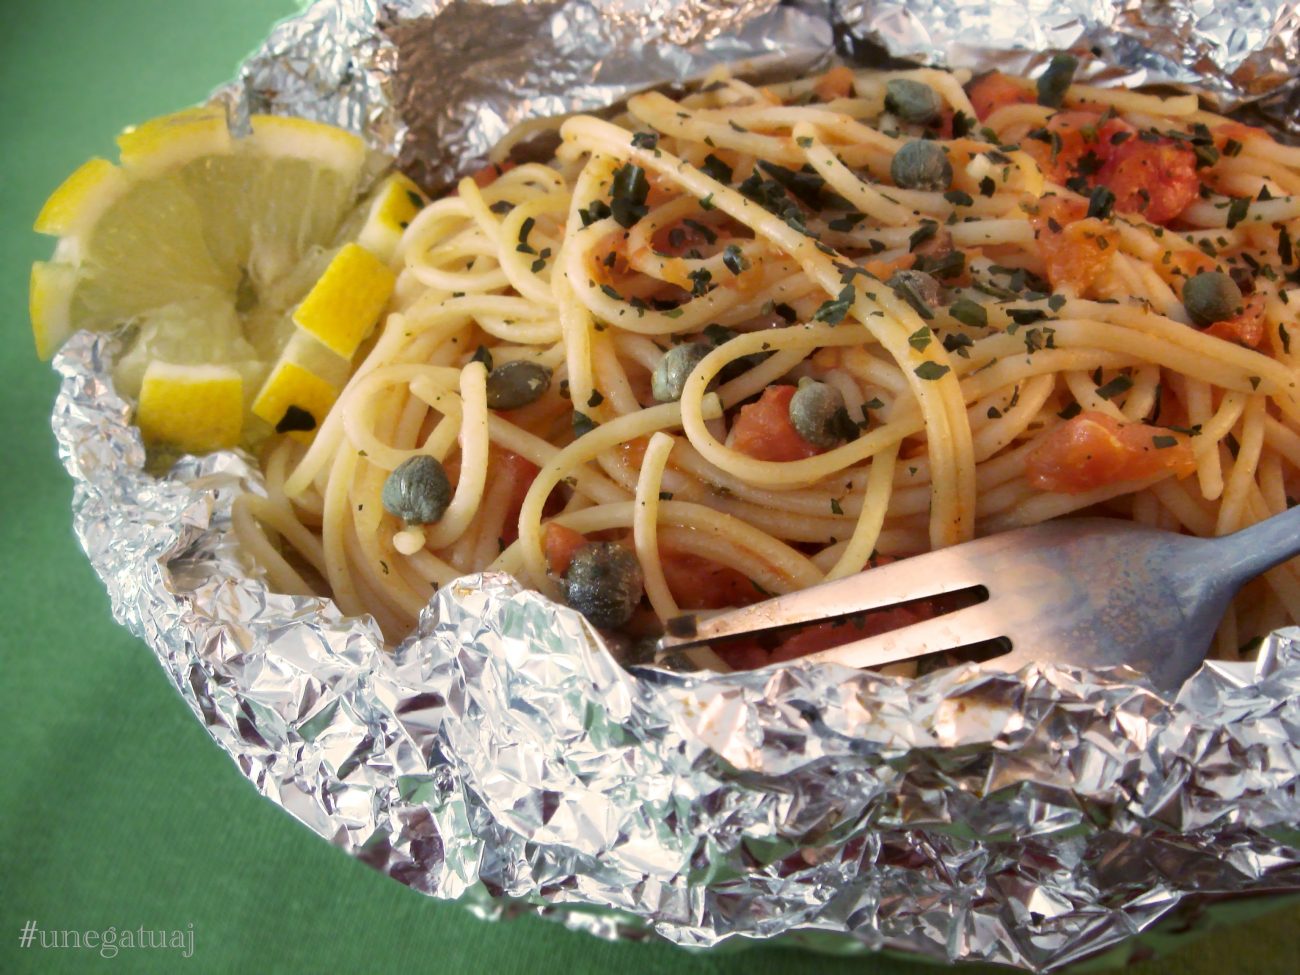 Makarona spageti me limon në shportë alumini